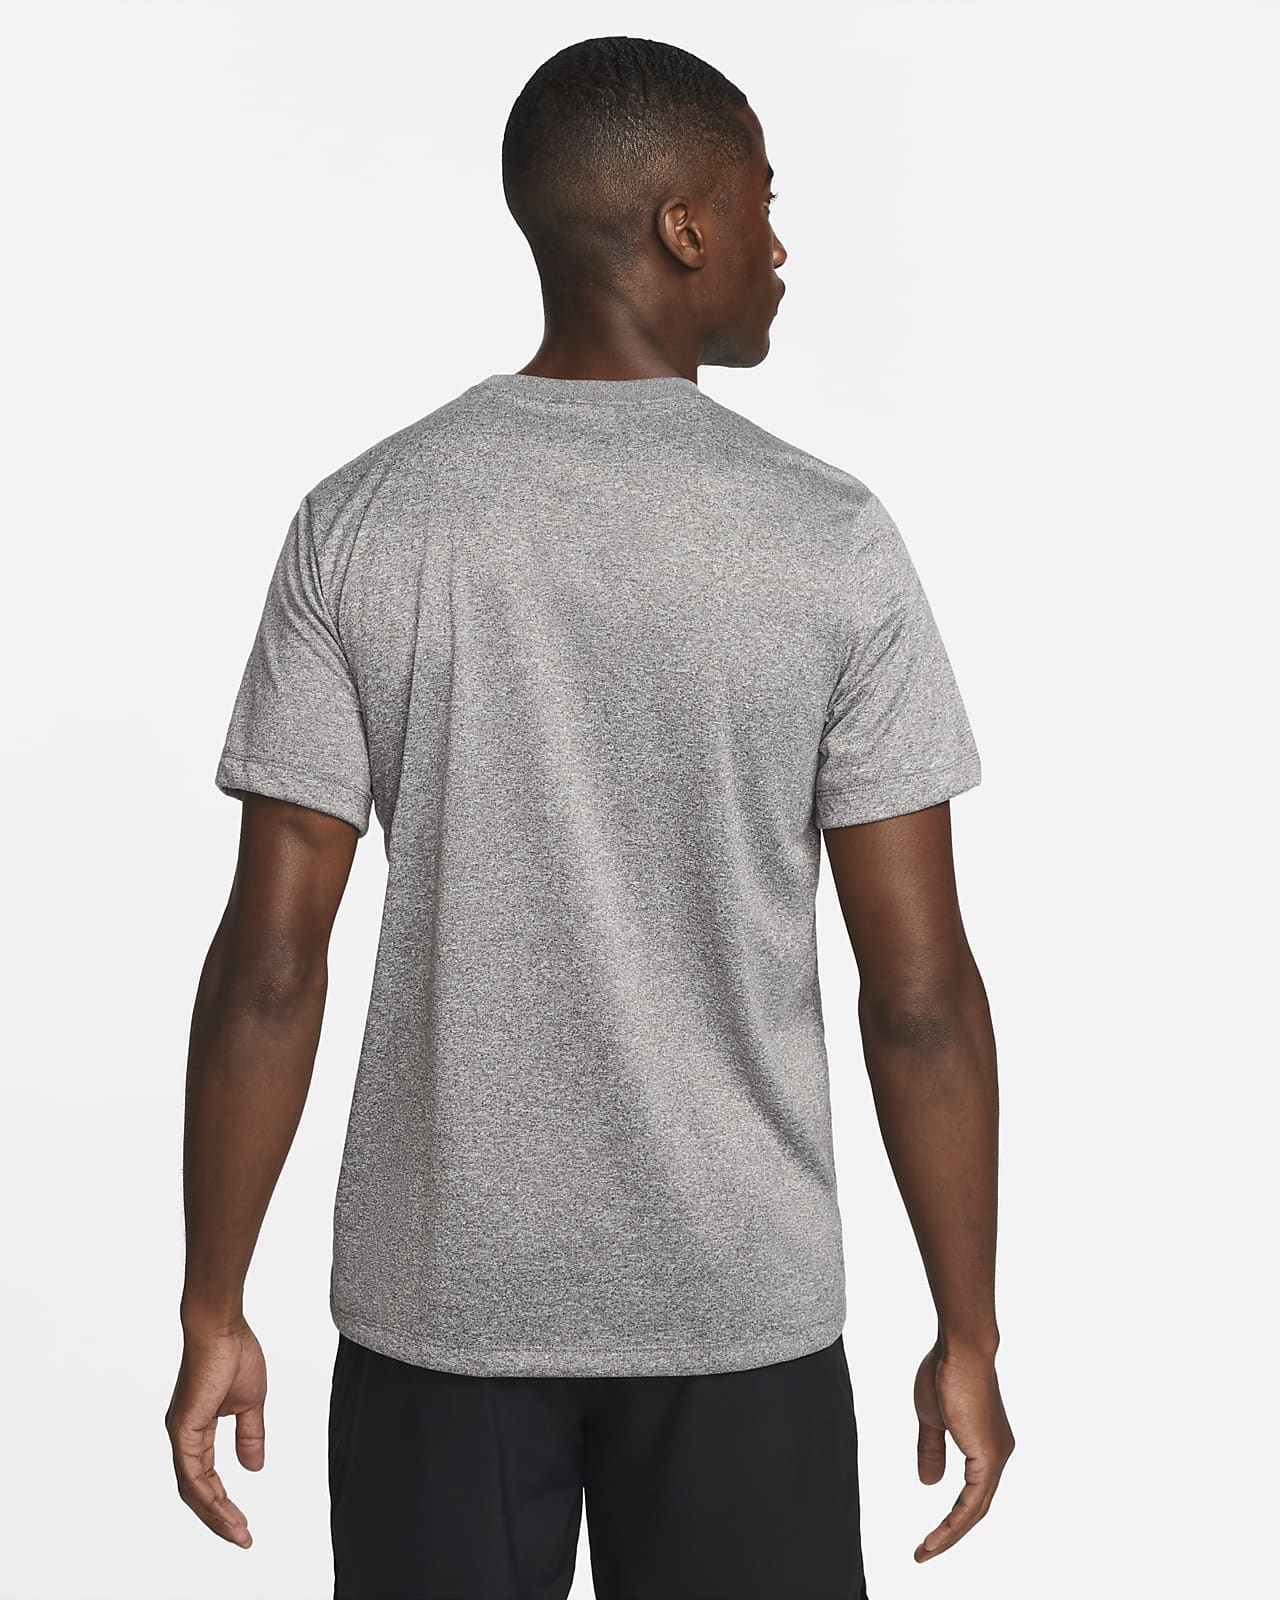 Nike Men's Fitness T-Shirt. Nike.com